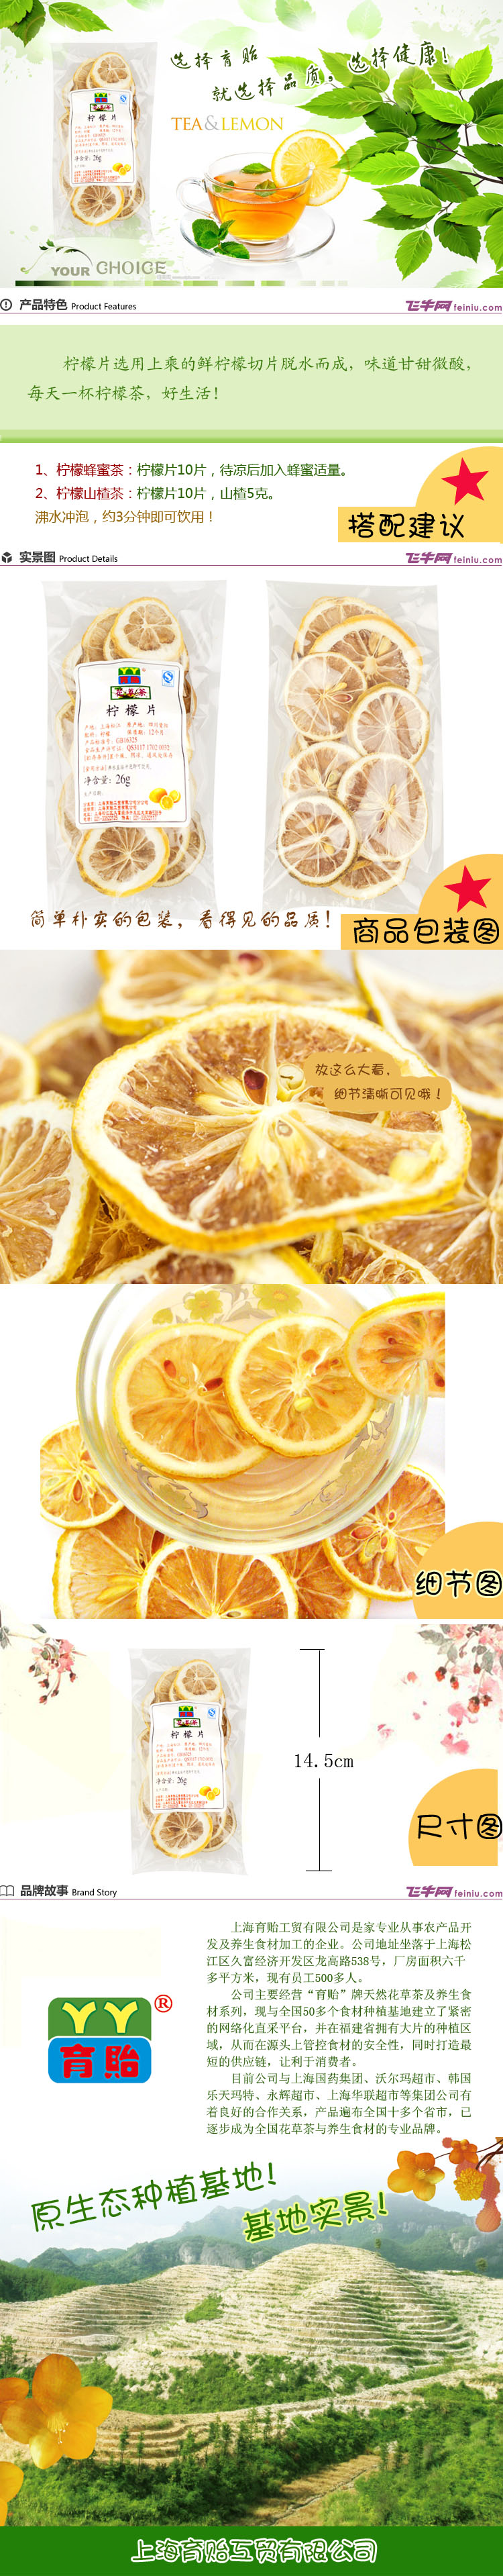 育贻 柠檬片 26g/袋